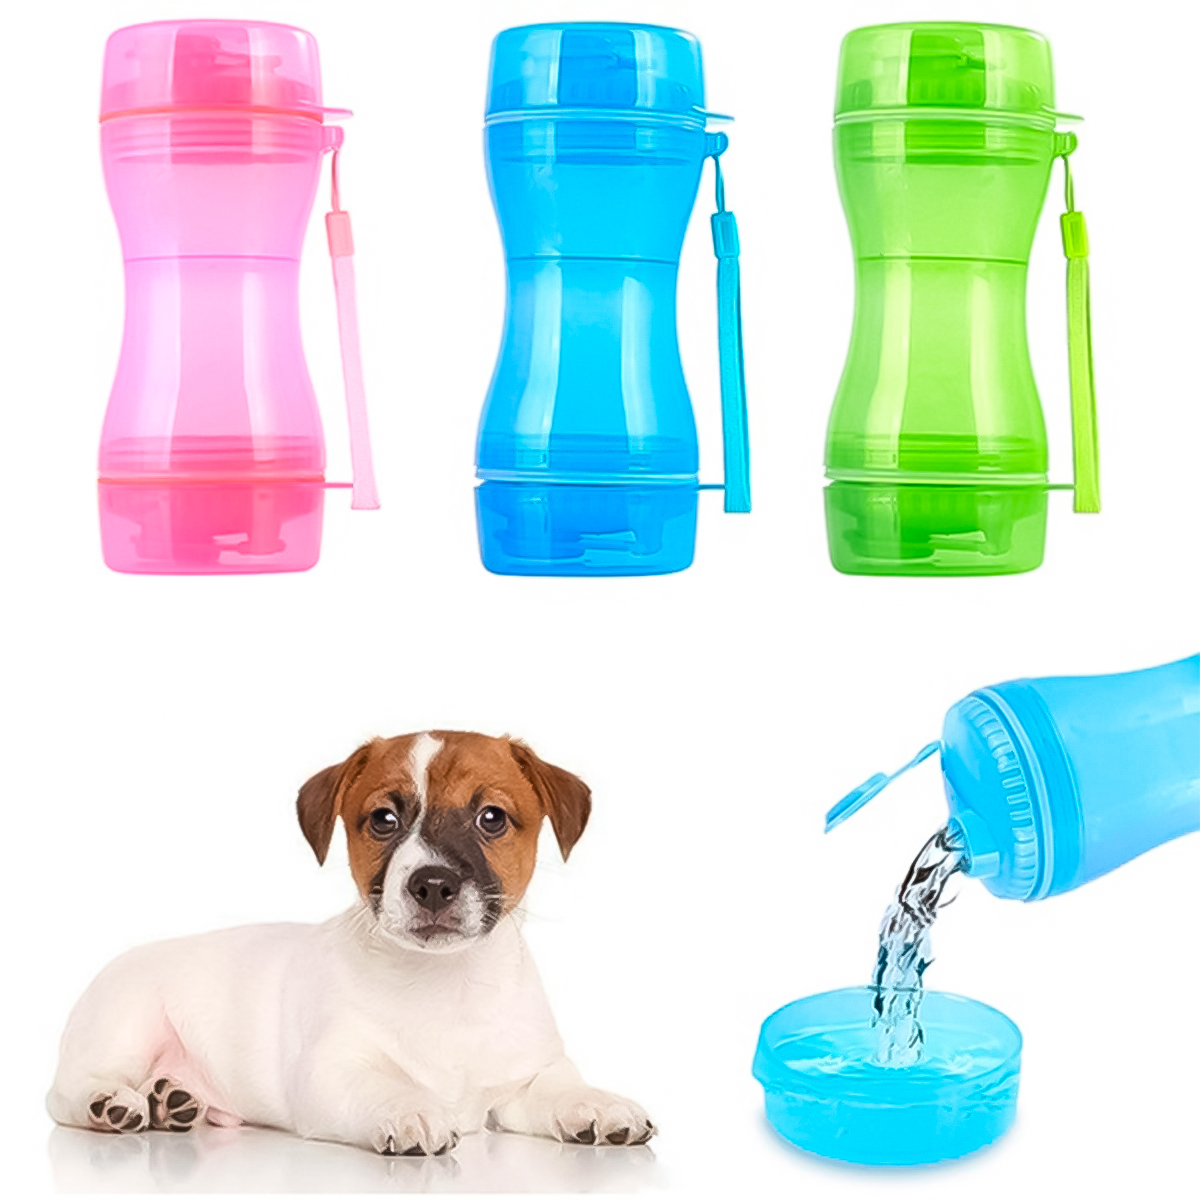 Botellas personalizadas portátiles para perros: nueva tendencia